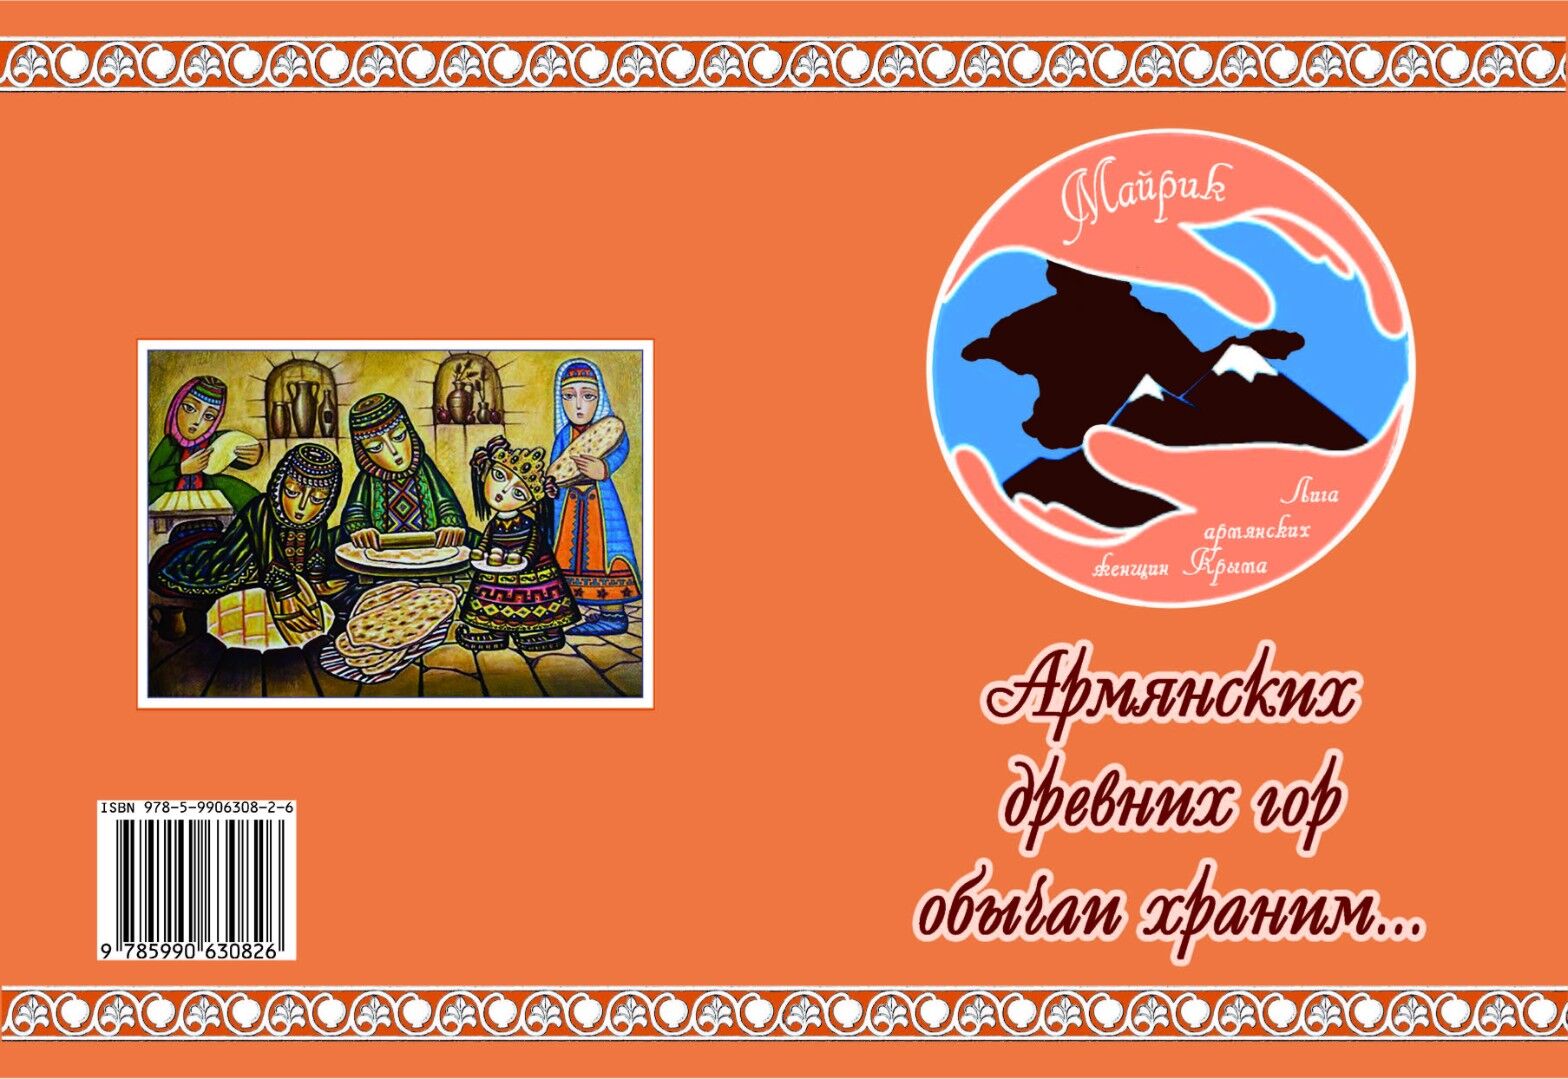 Армянских древних гор обычаи храним.pdf 